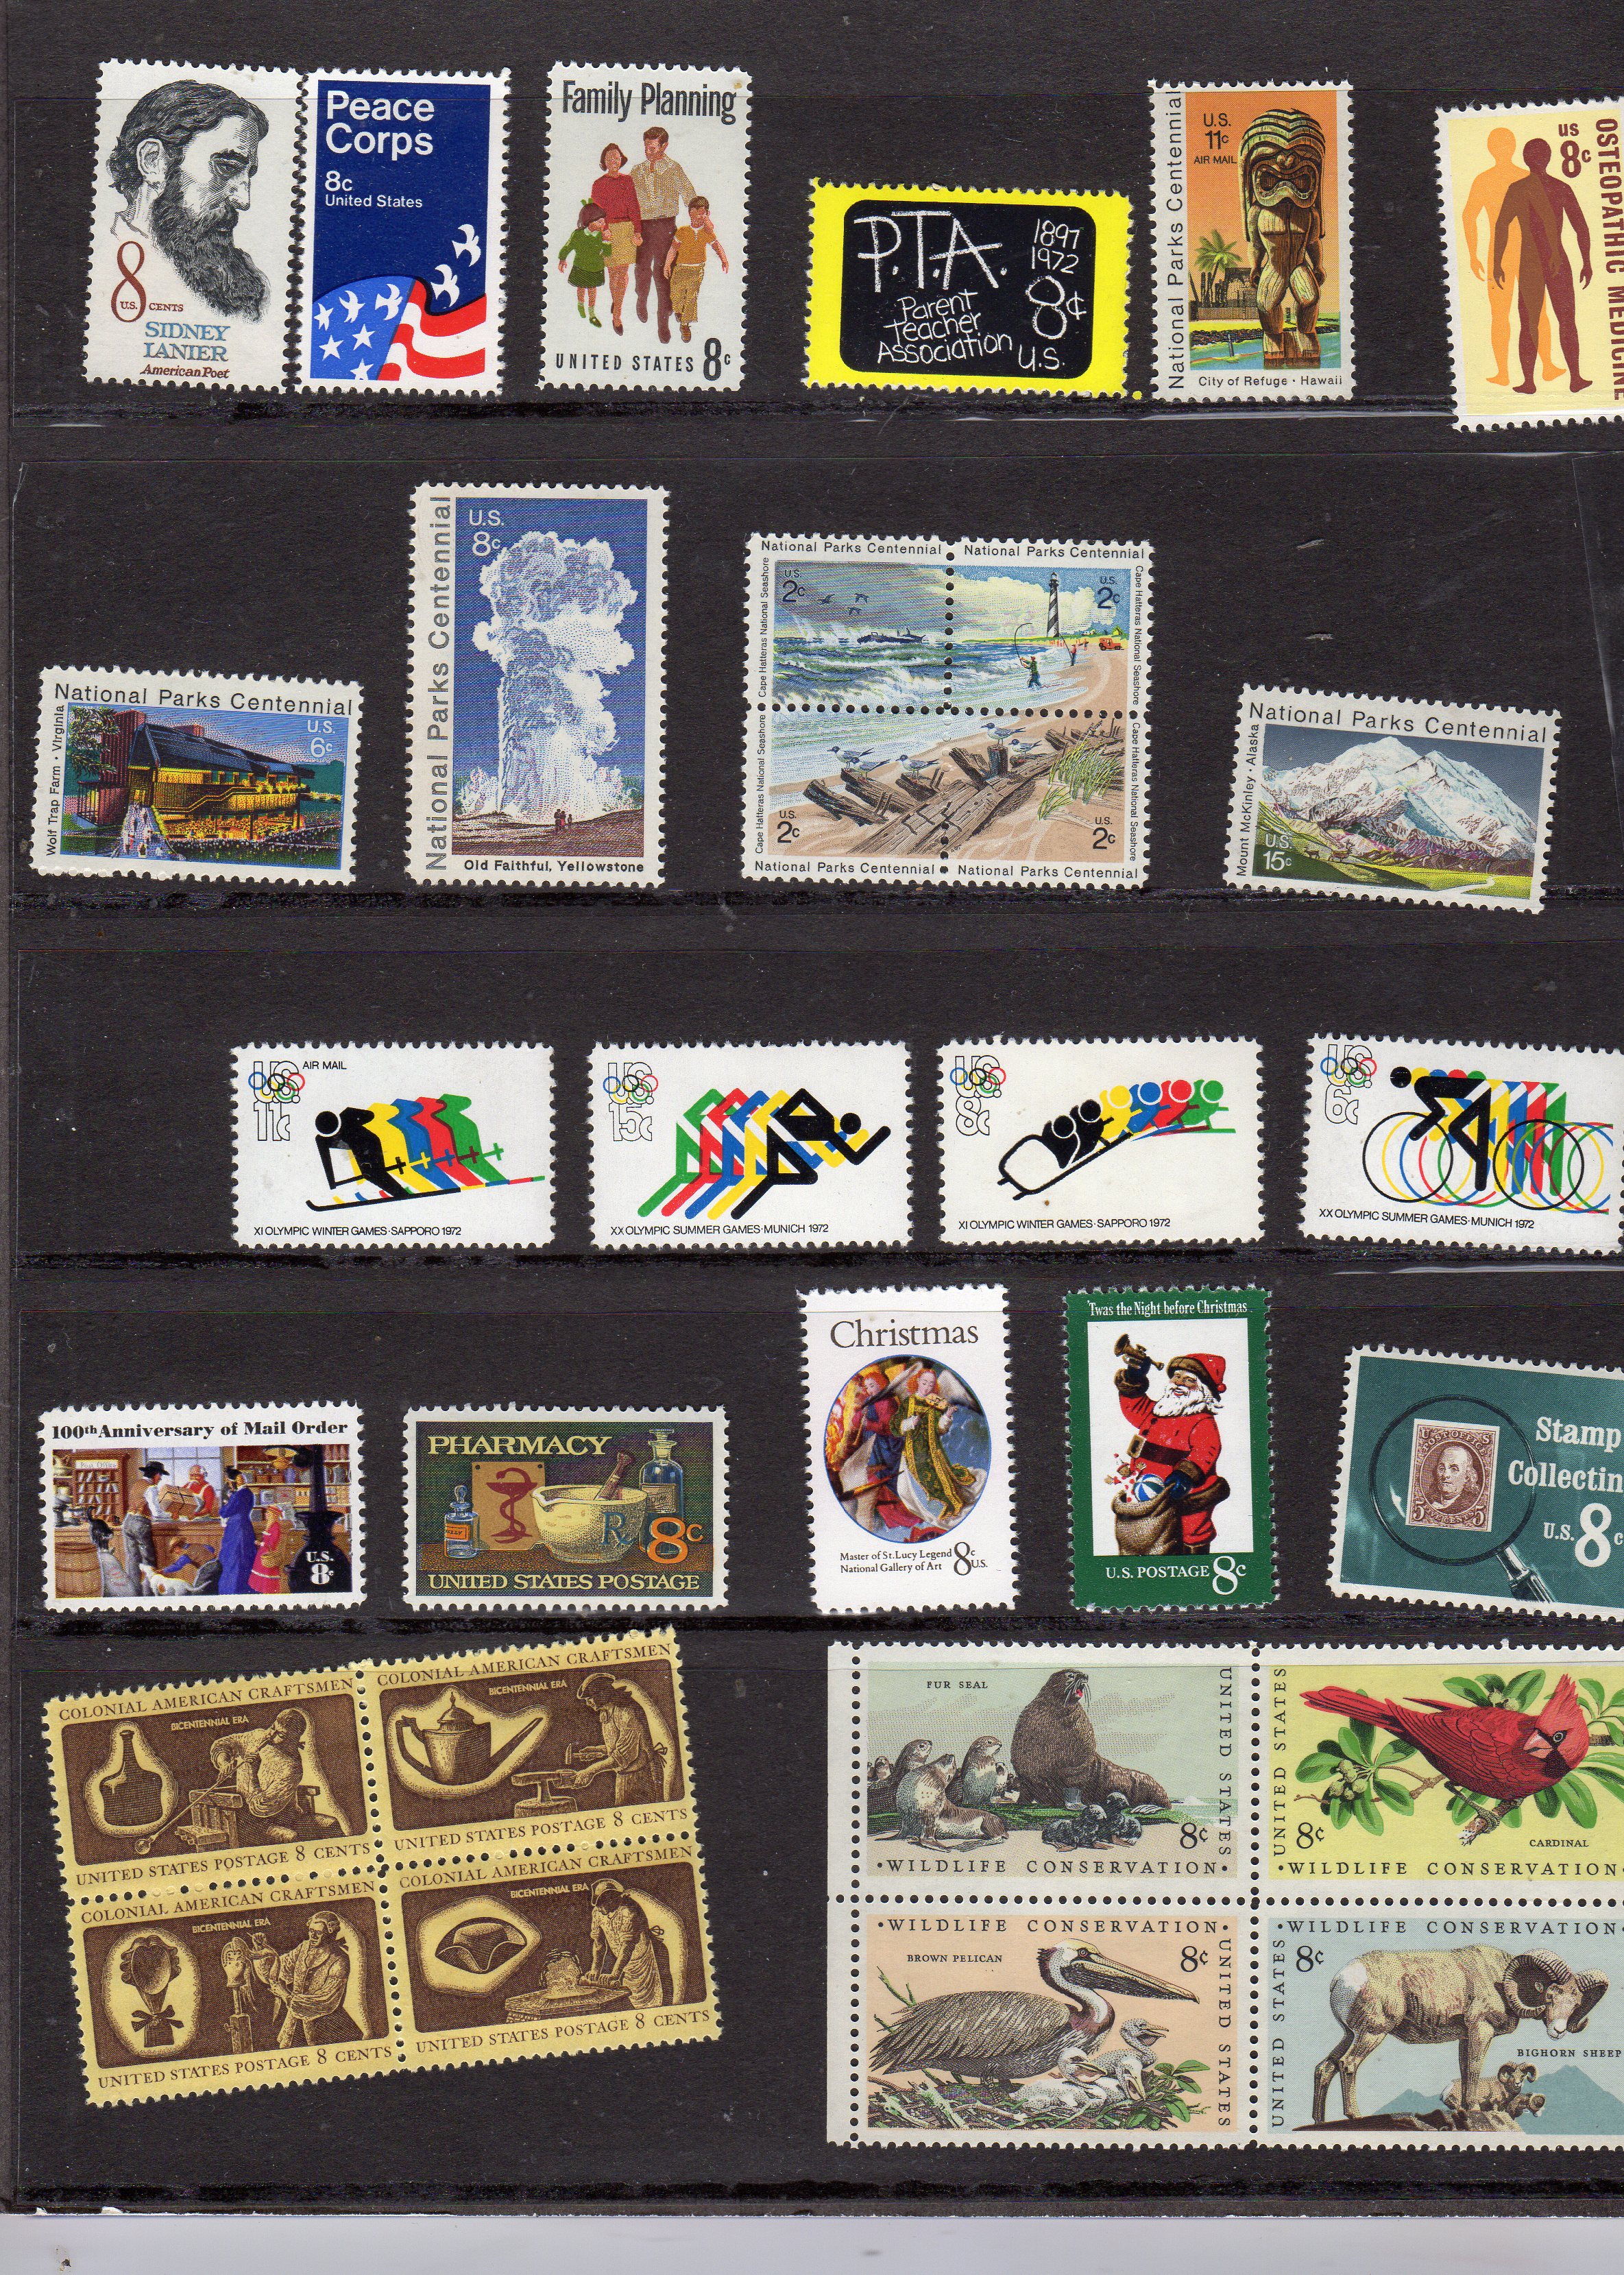 United states postal service Special stamp Mini album 1972 